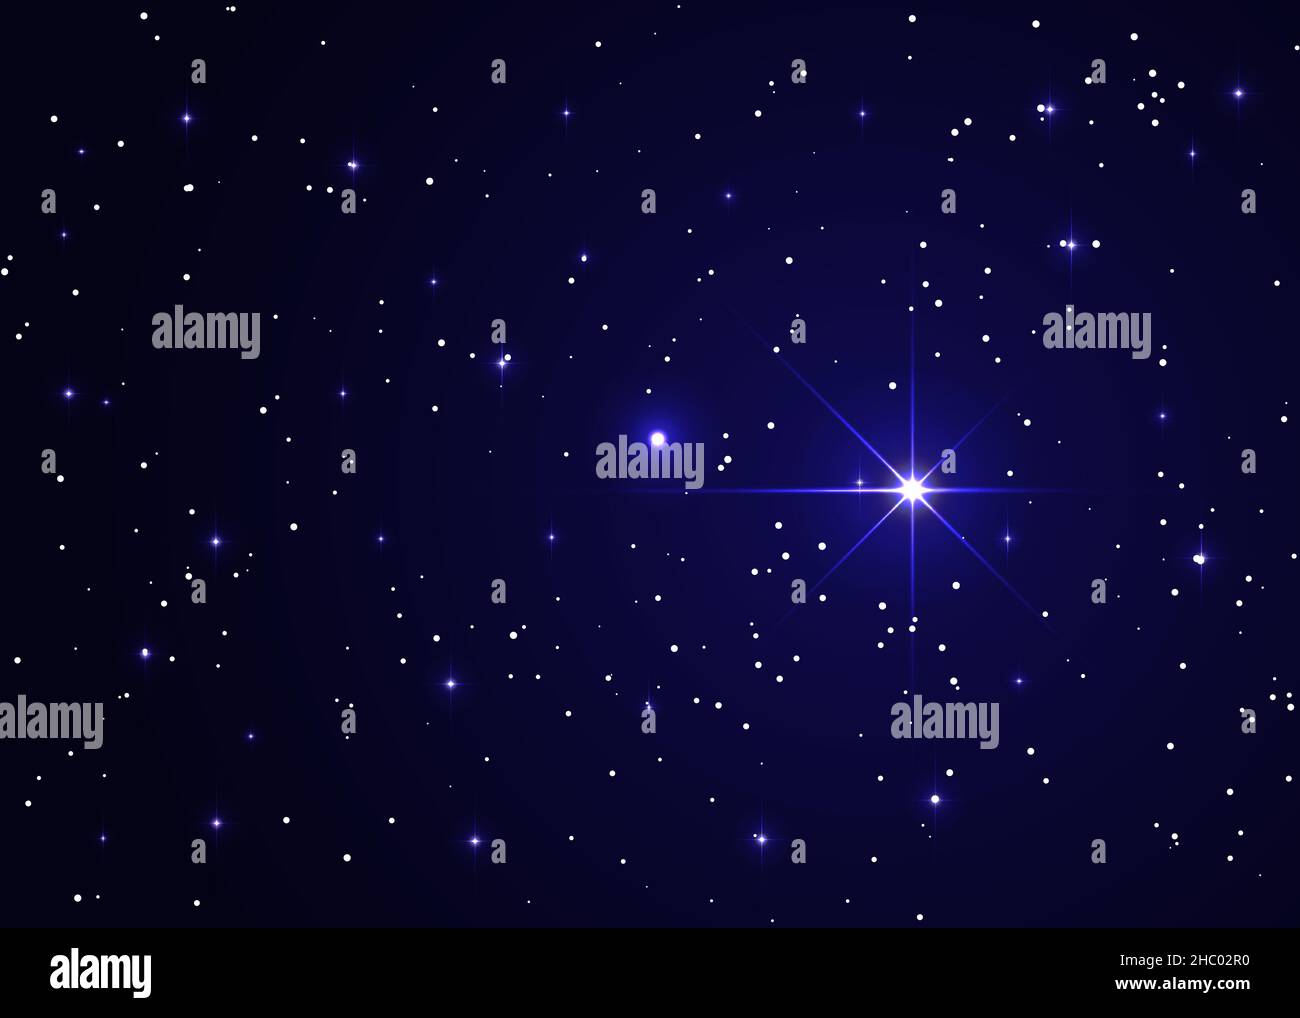 Der Stern leuchtet über der Krippe von weihnachten Jesu Christi. Nächtlicher Sternenhimmel, ein schöner Raum mit Nebel. Abstrakter Hintergrund mit Sternen, Raum Stock Vektor